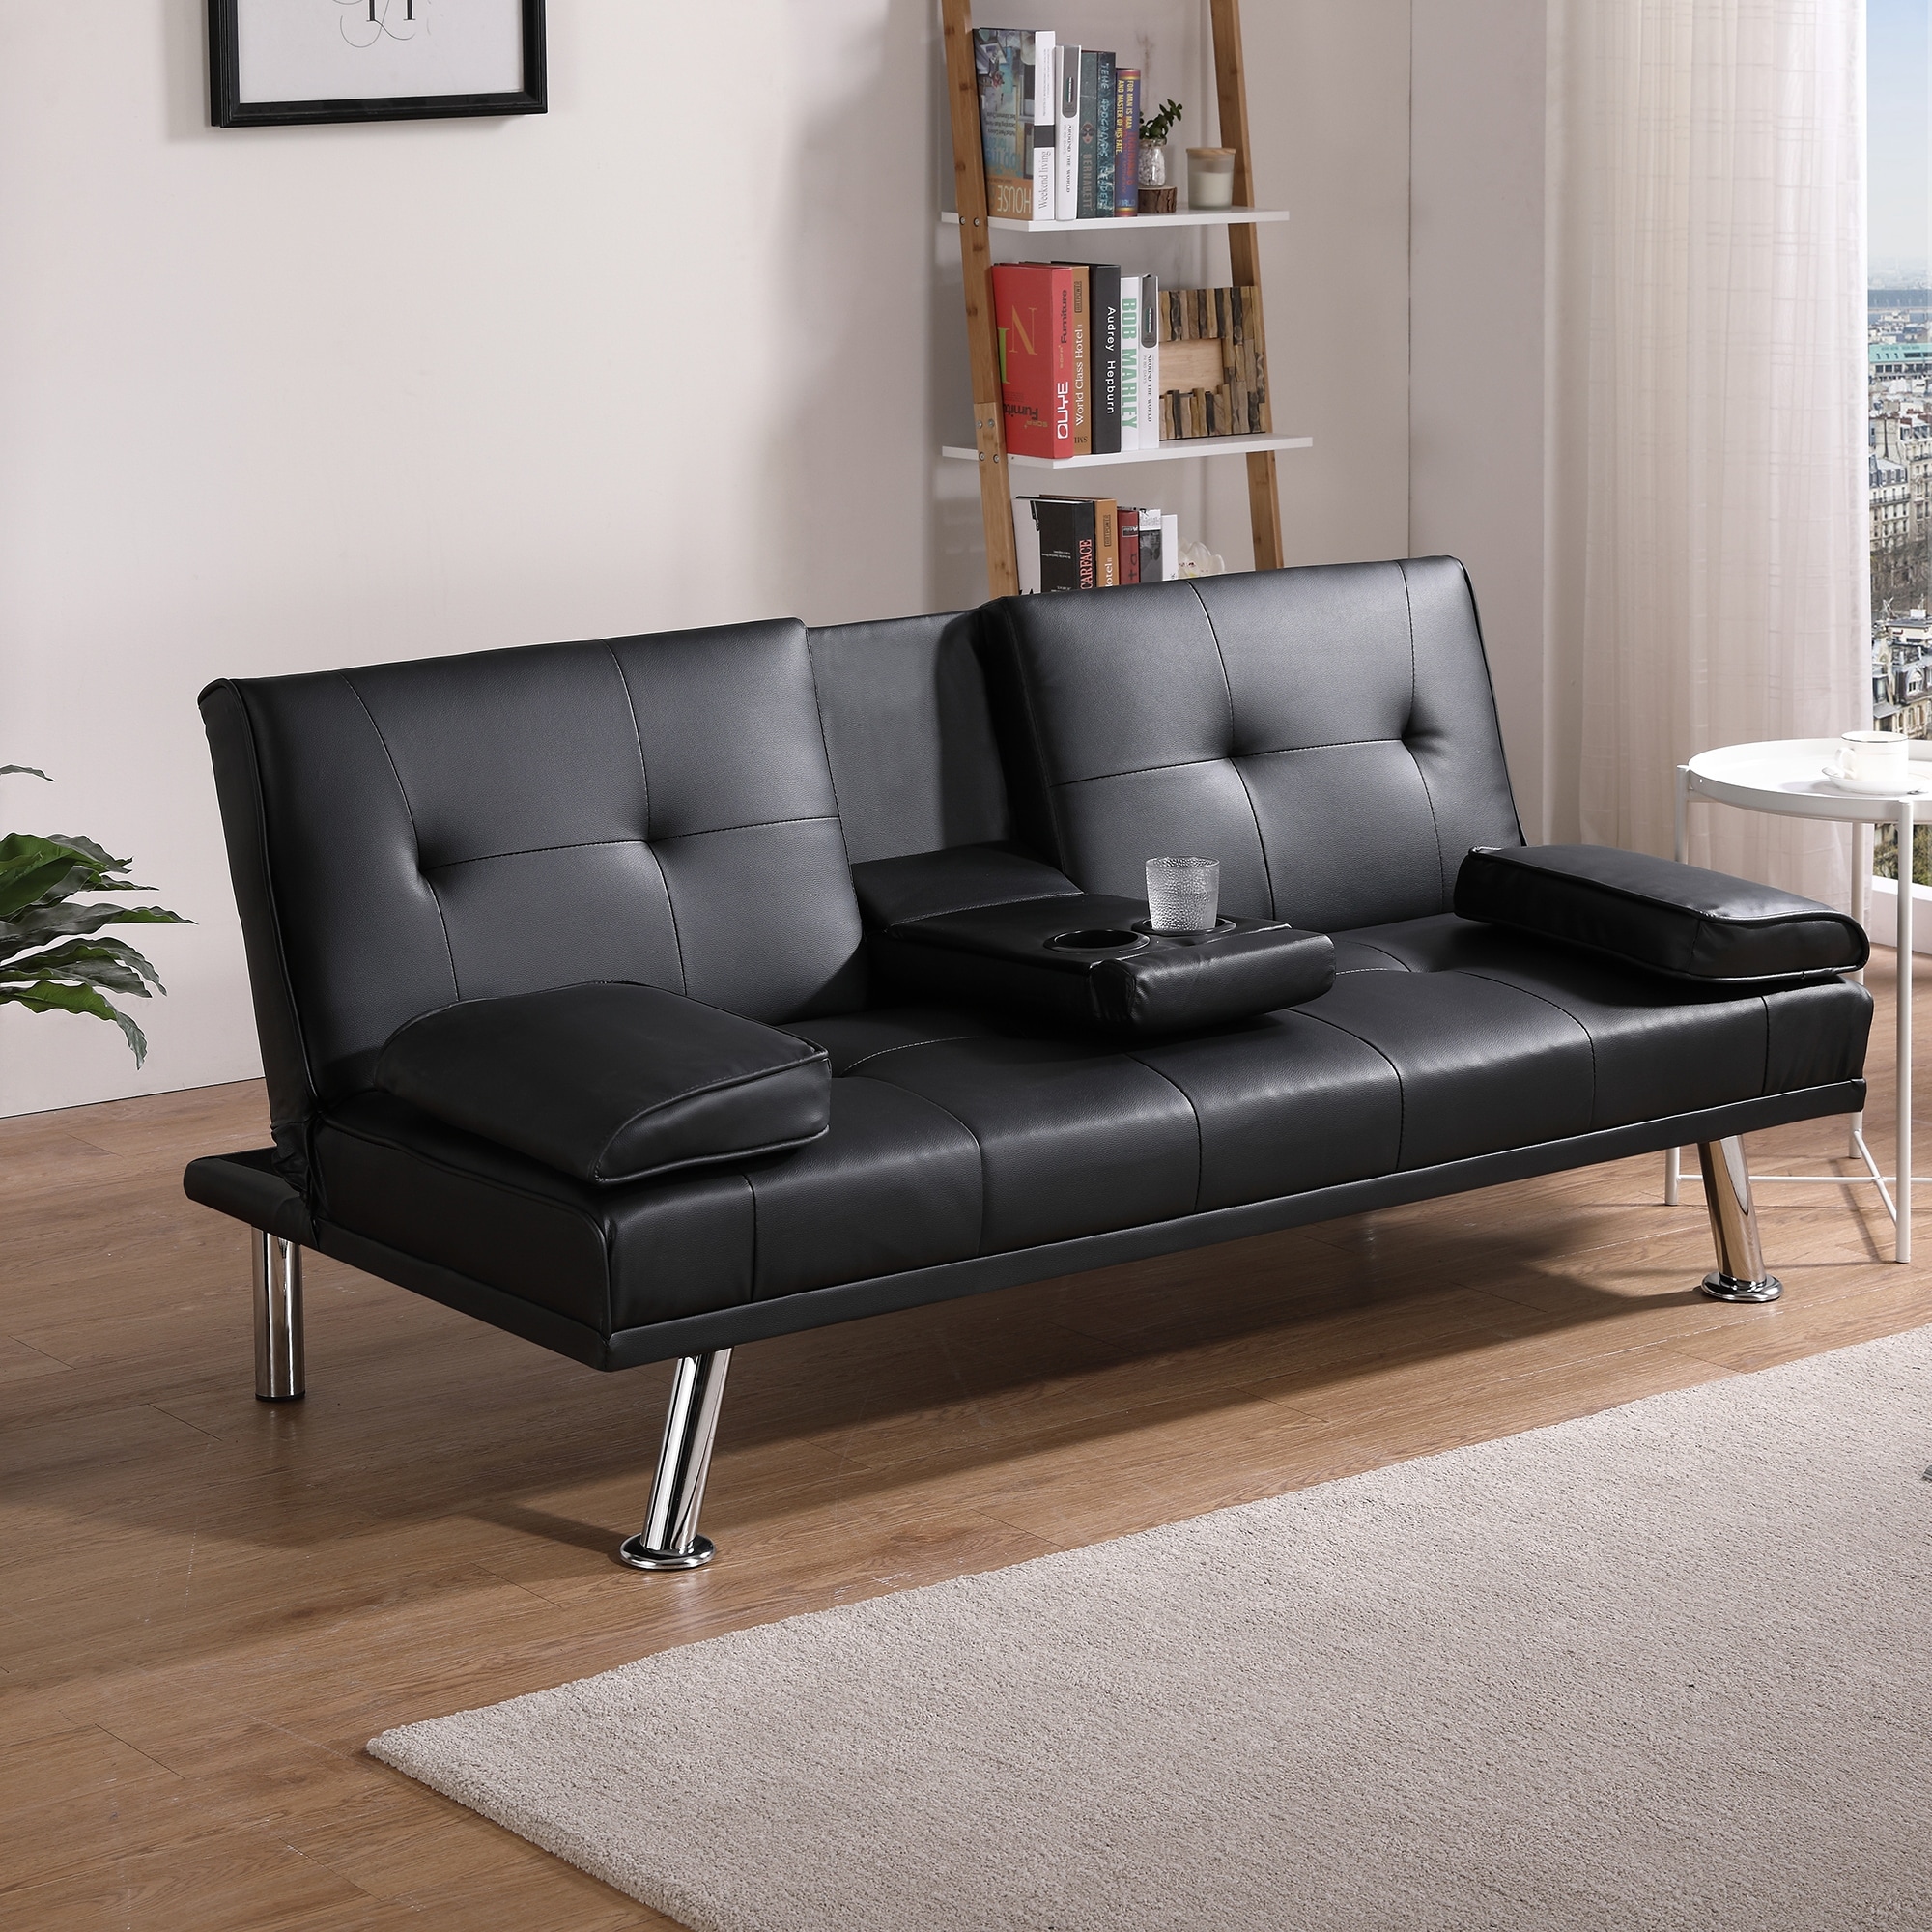 ZACHVO Multifunctional folding sofa